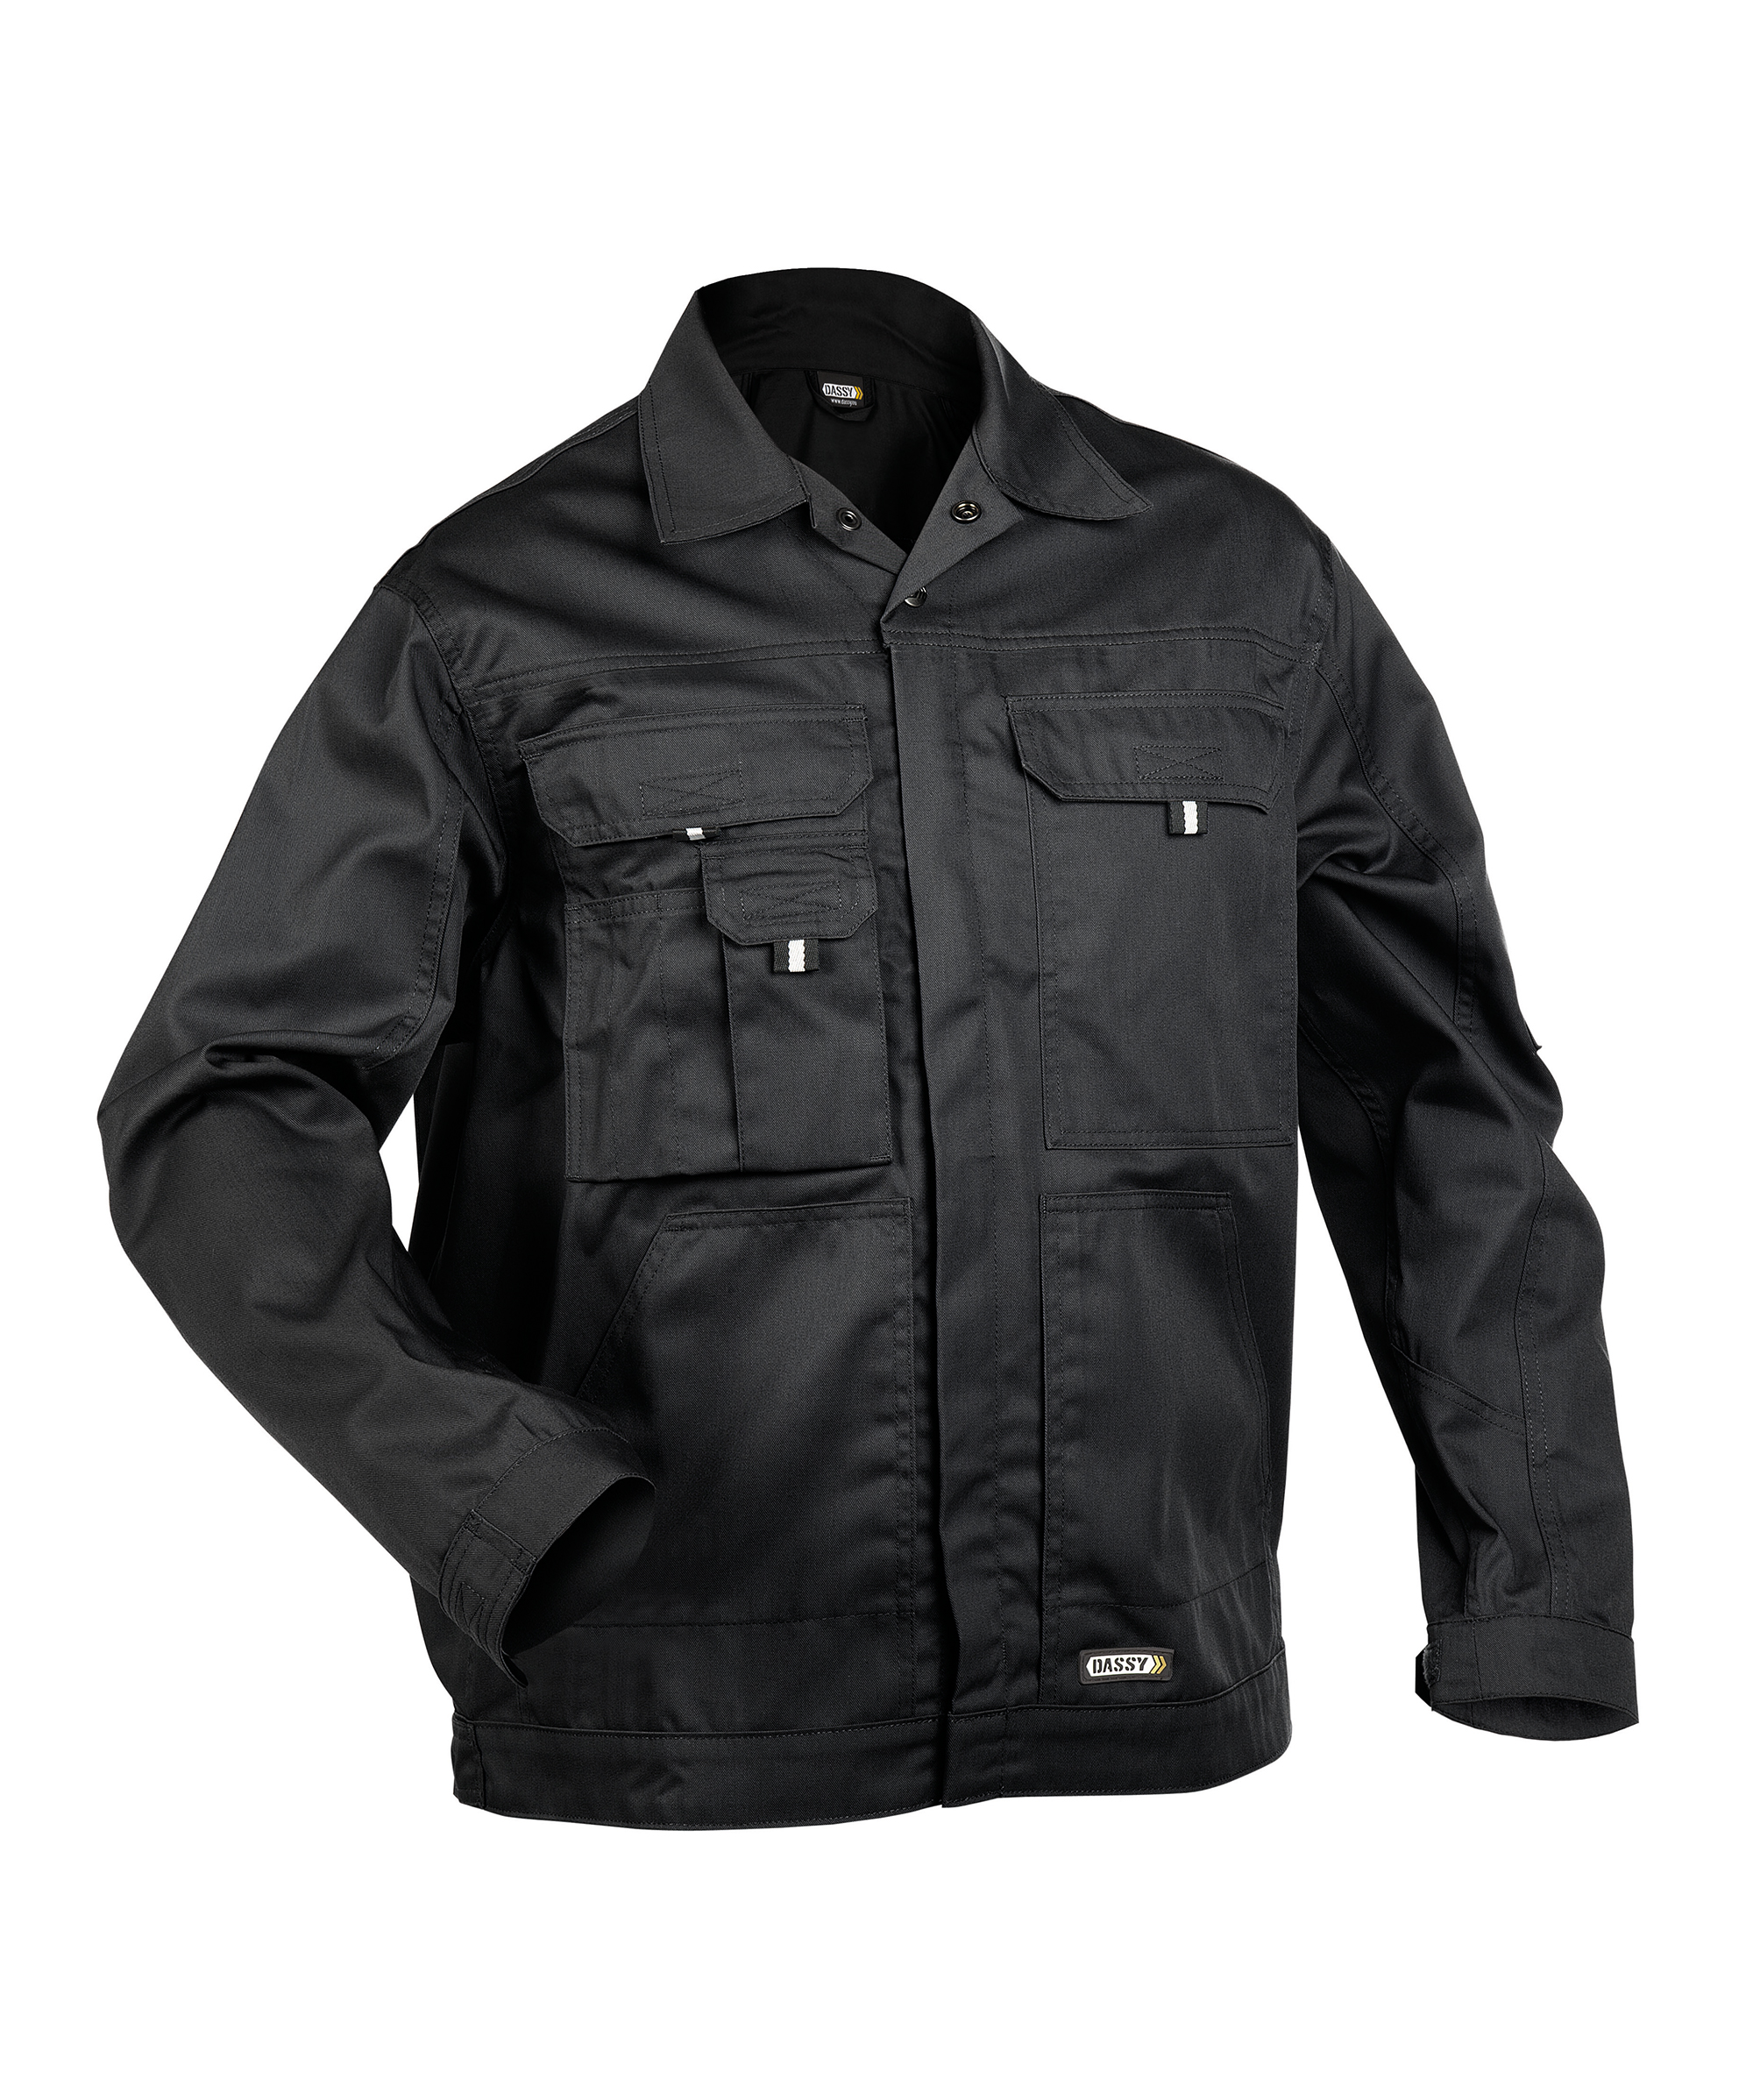 locarno_work-jacket_black_front.jpg